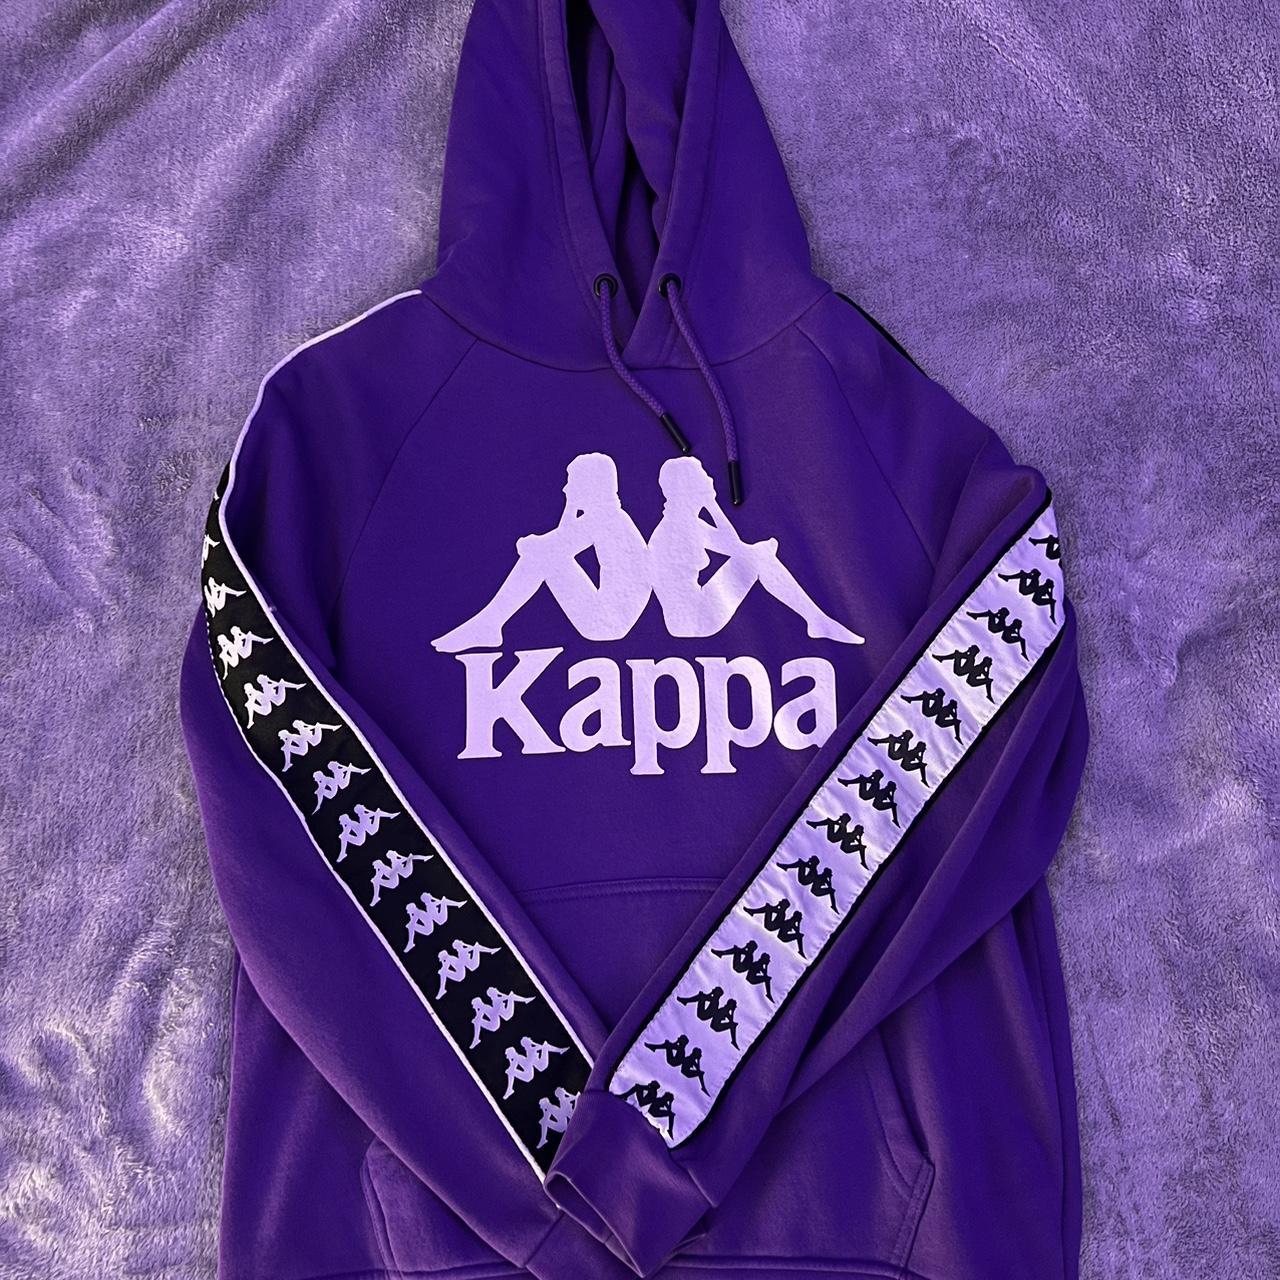 Kappa Men's Hoodie | Depop